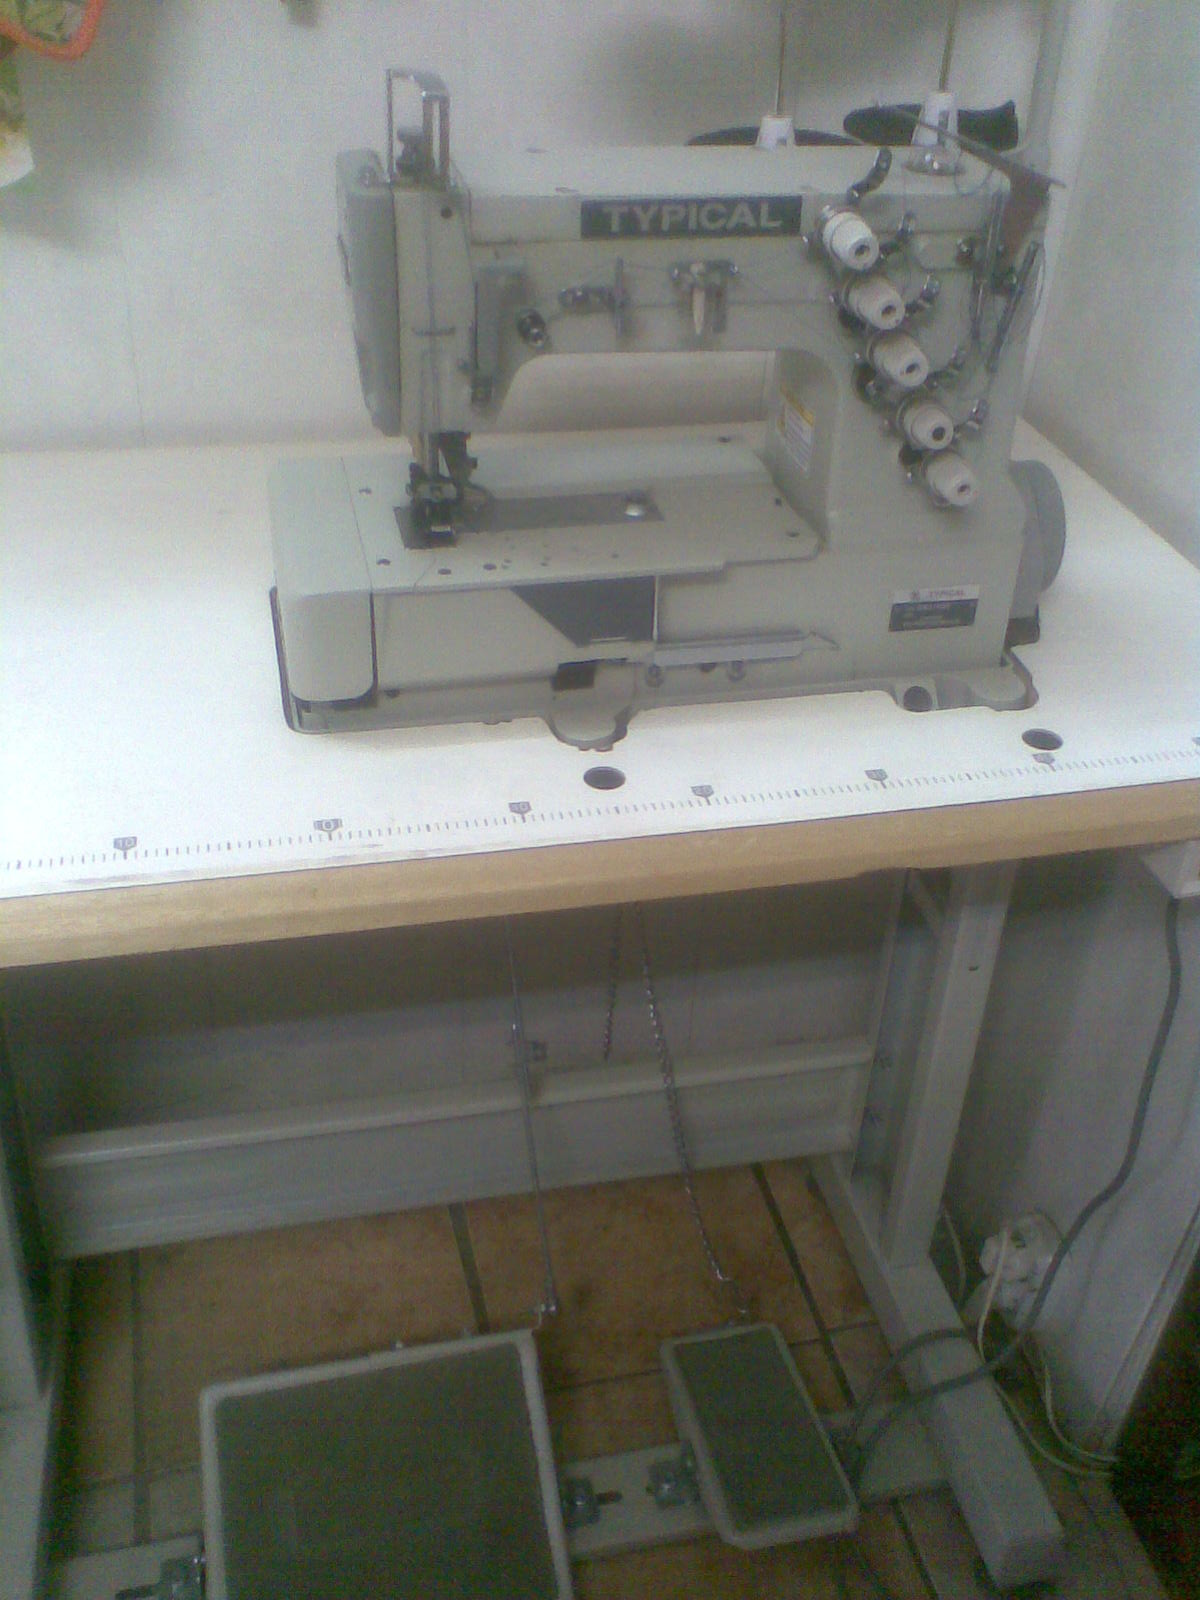 gc6890hd4 промышленная швейная машина typical комплект голова стол